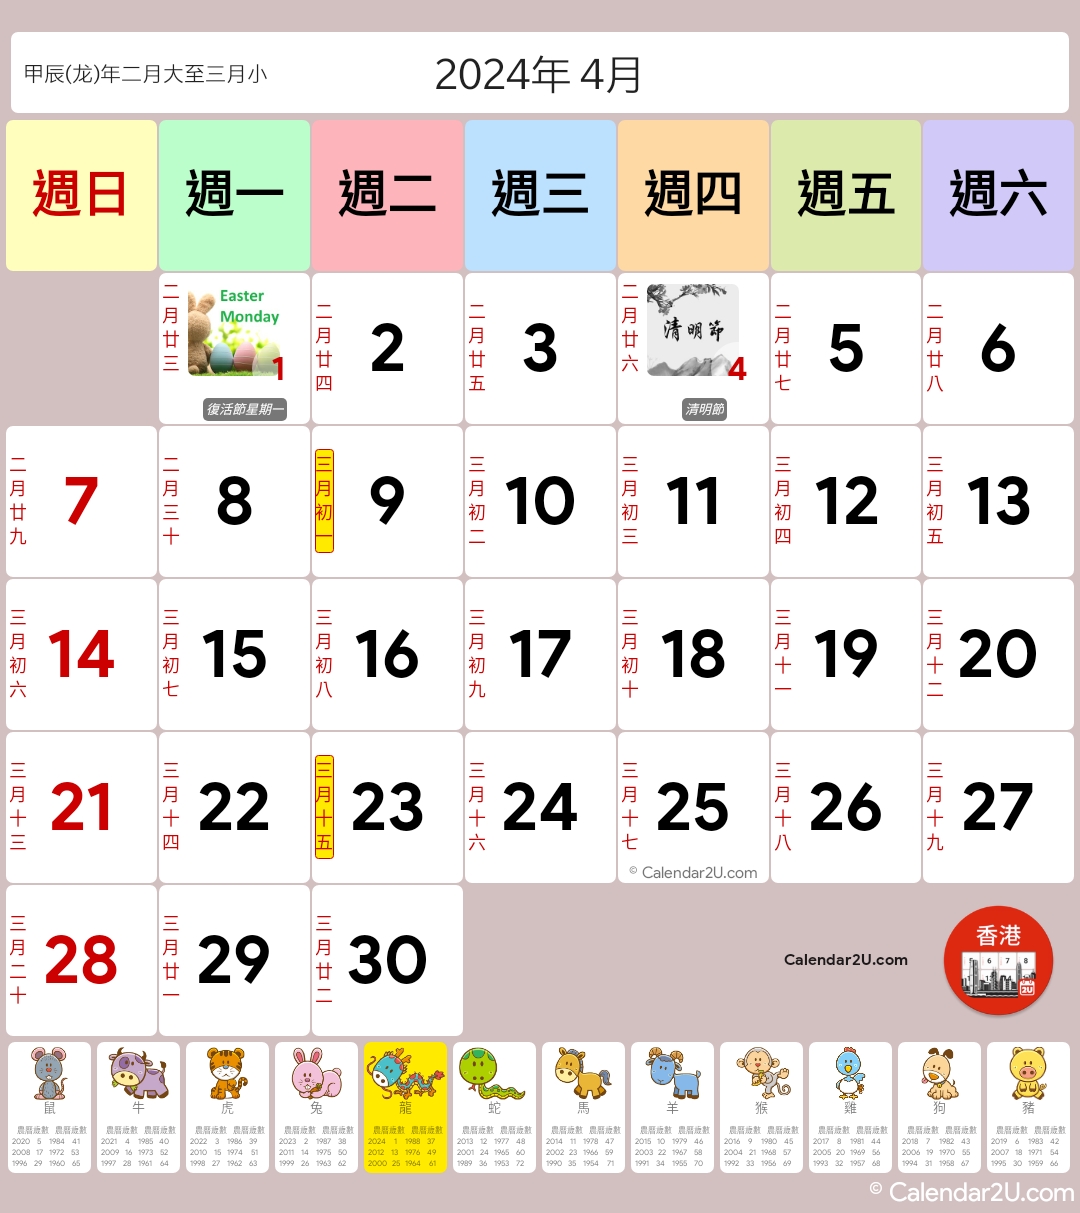 香港 (Hong Kong) Calendar